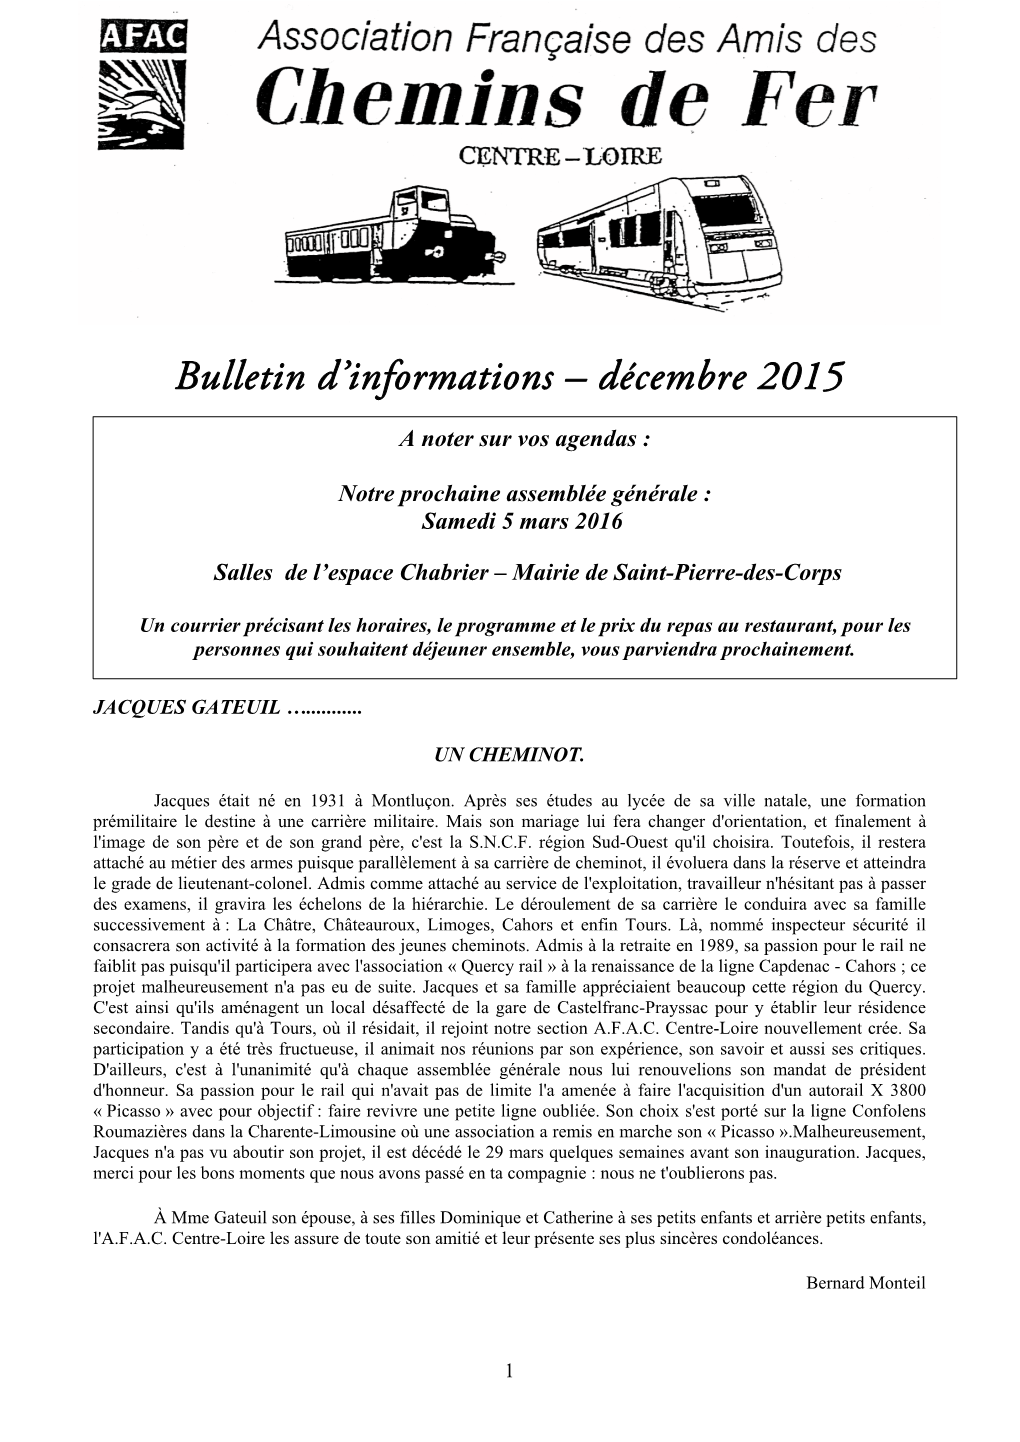 Bulletin D'informations – Novembre 2015